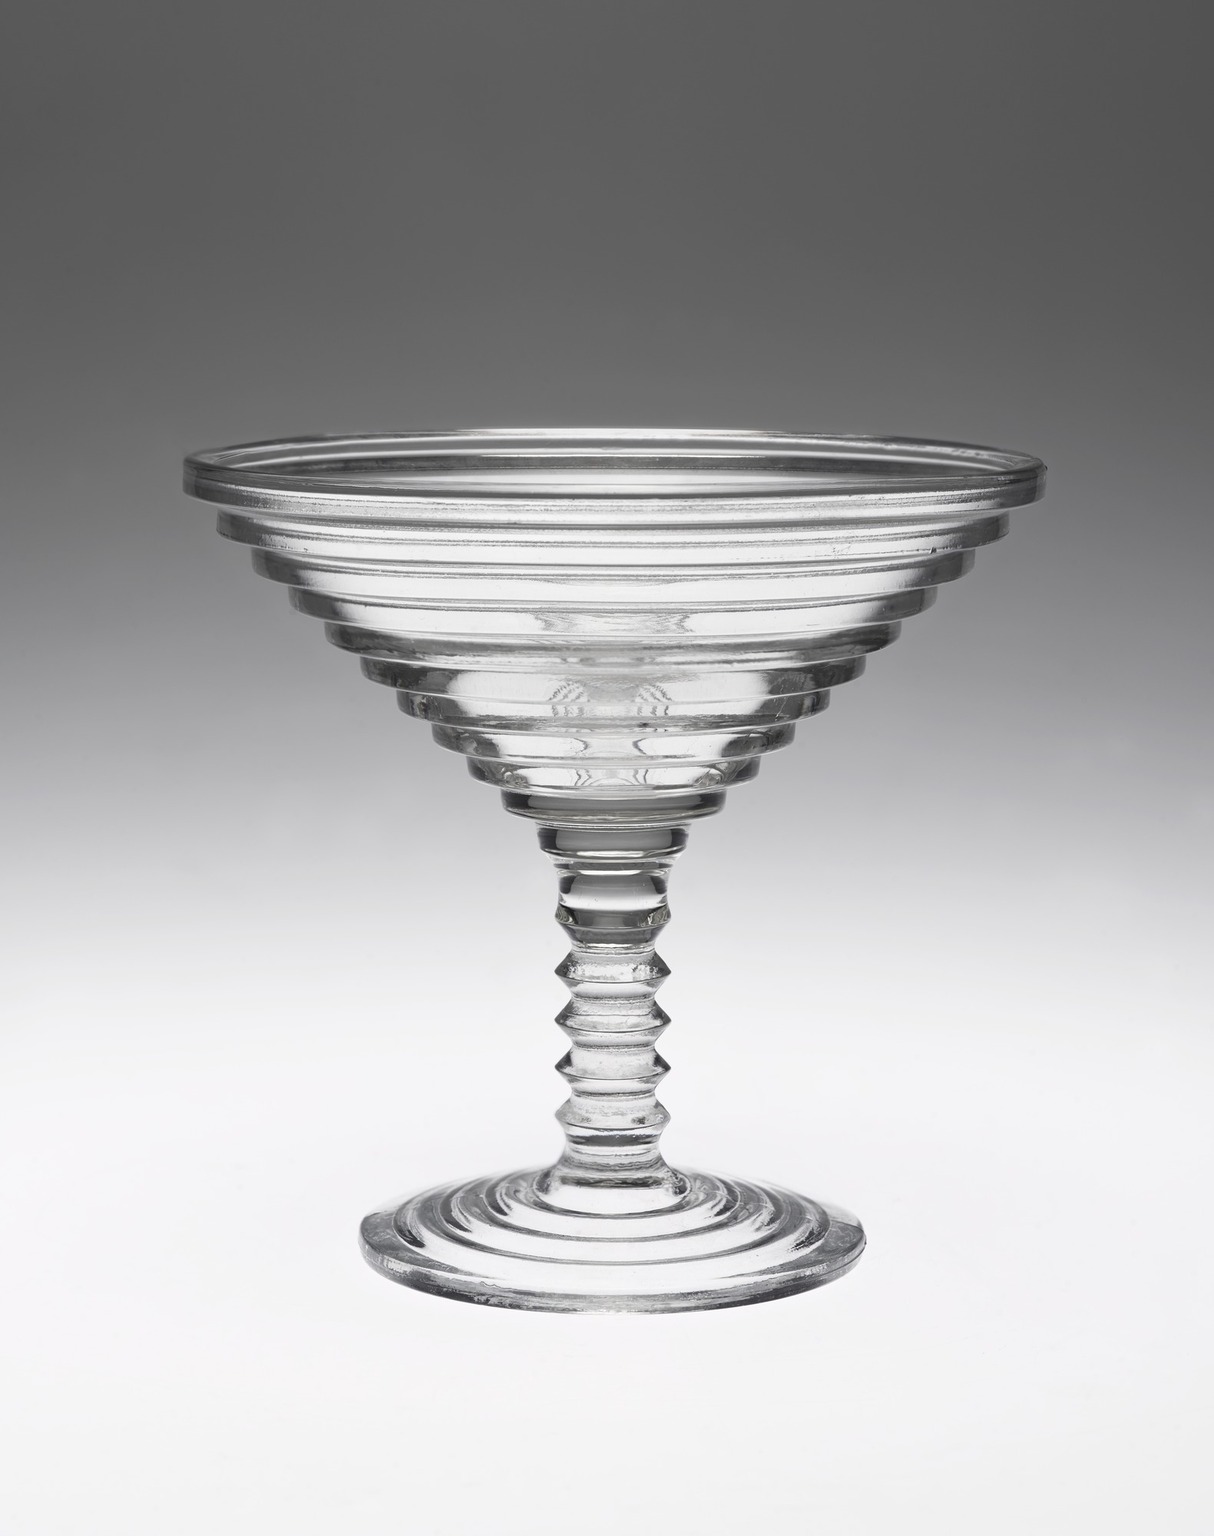 Manhattan in Martini Glass